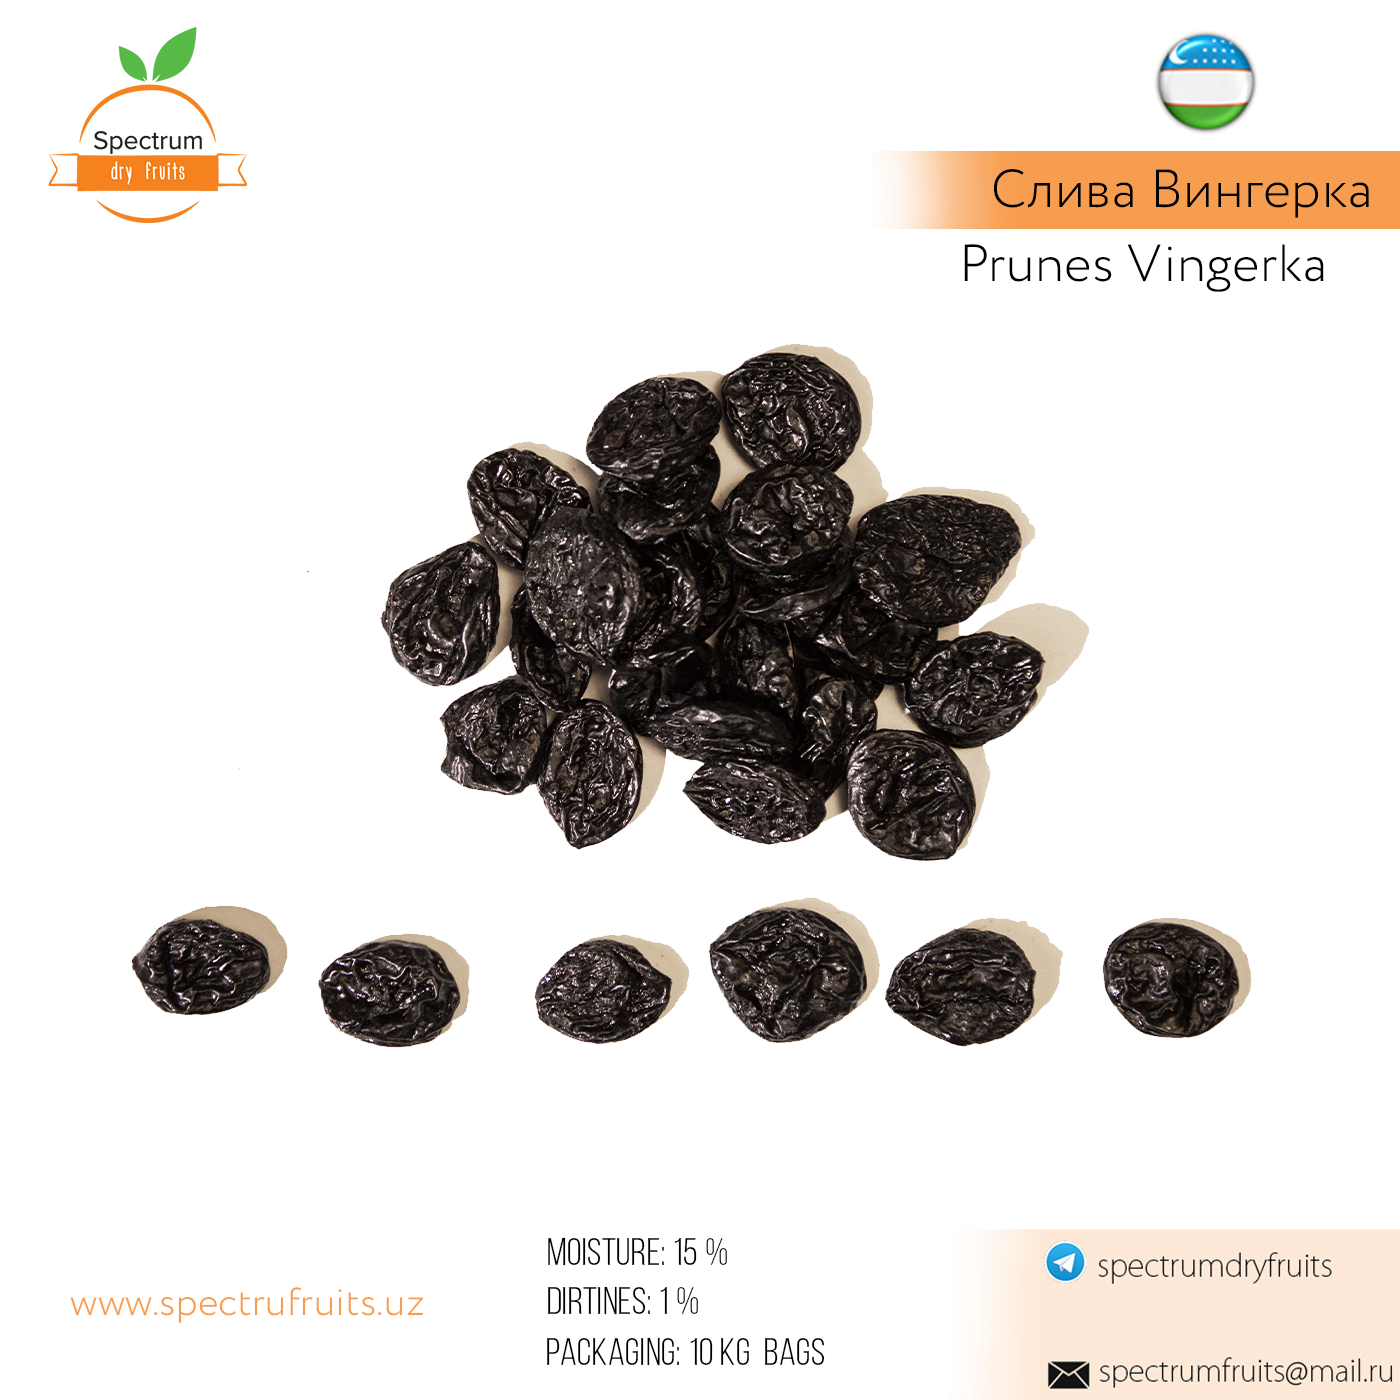 Dried prunes grade hungarian from Uzbekistan